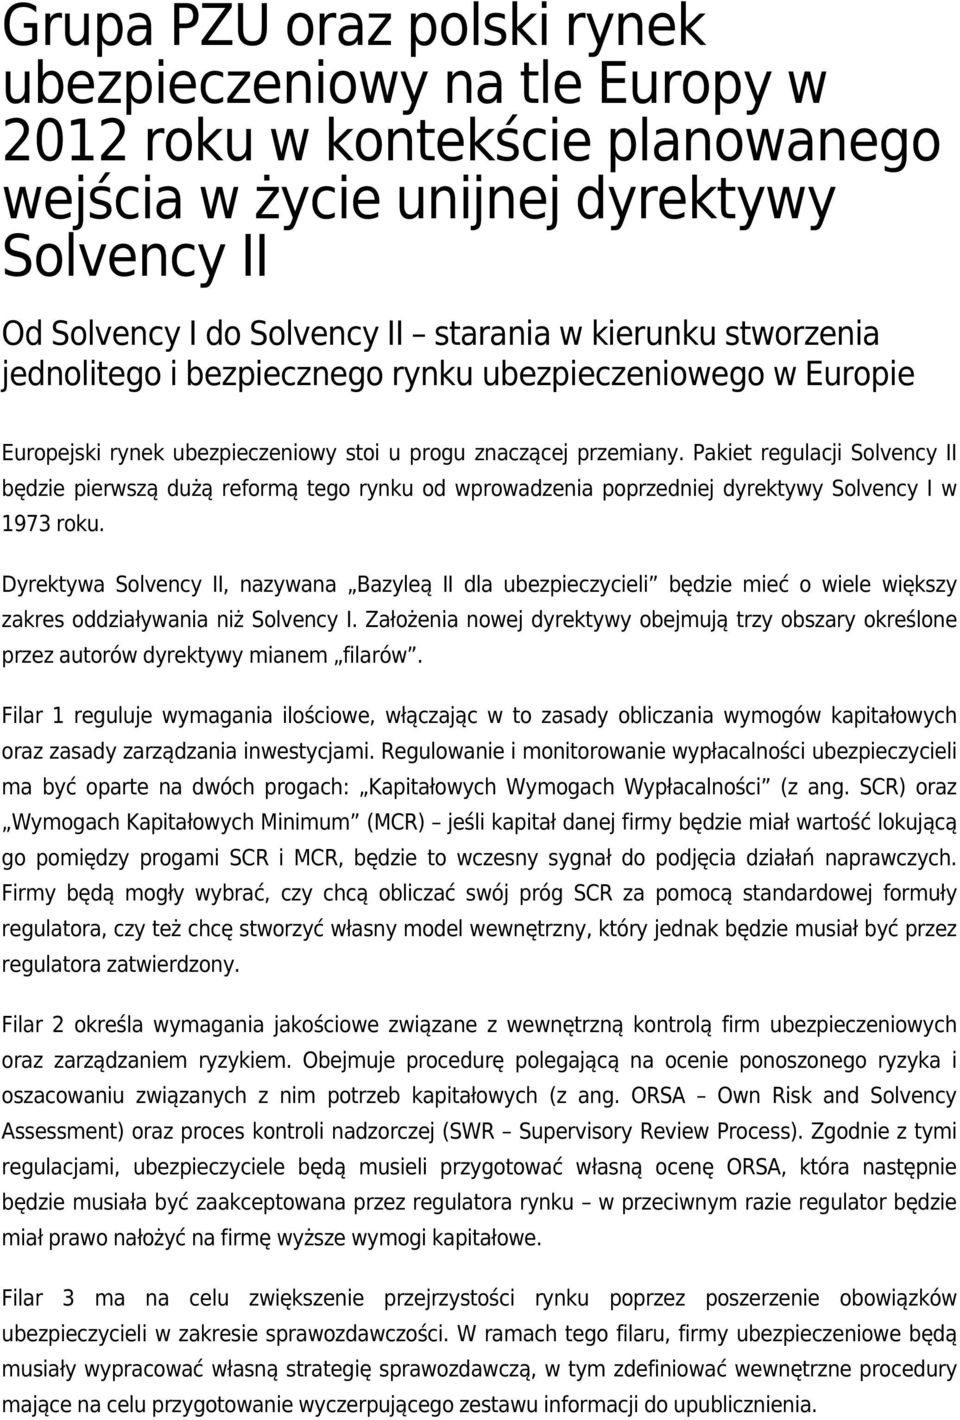 Pakiet regulacji Solvency II będzie pierwszą dużą reformą tego rynku od wprowadzenia poprzedniej dyrektywy Solvency I w 1973 roku.